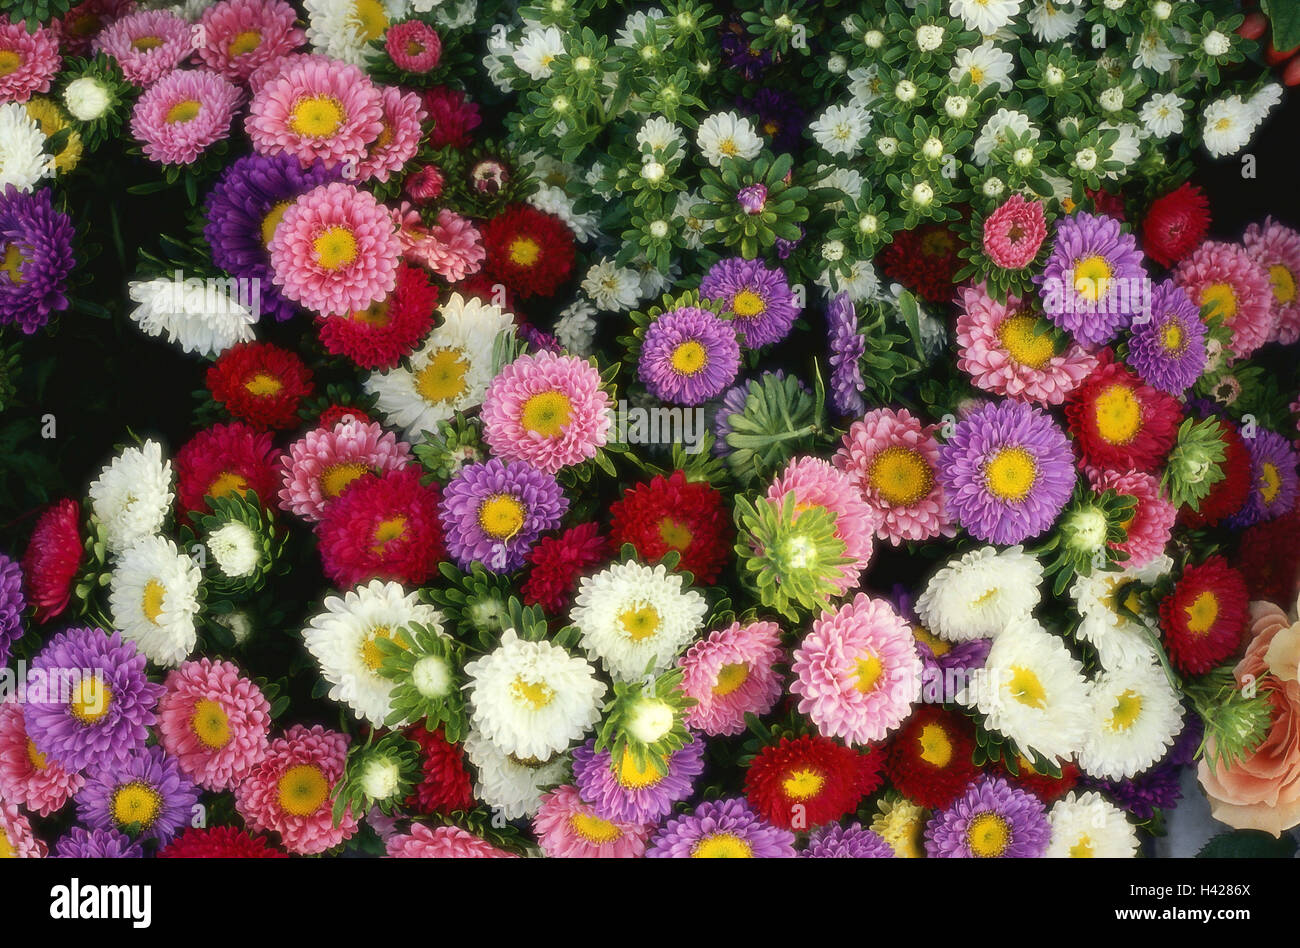 Astern, Blumen, Blüten, detail, Pflanzen, Verbundwerkstoffe, Gartenblumen, Ornament Blumen, Sommerblumen, Blüte Pracht, dicht, eng, Blüten, von oben, rot, weiß, lila, rosa, Blütenmeer, Stockfoto